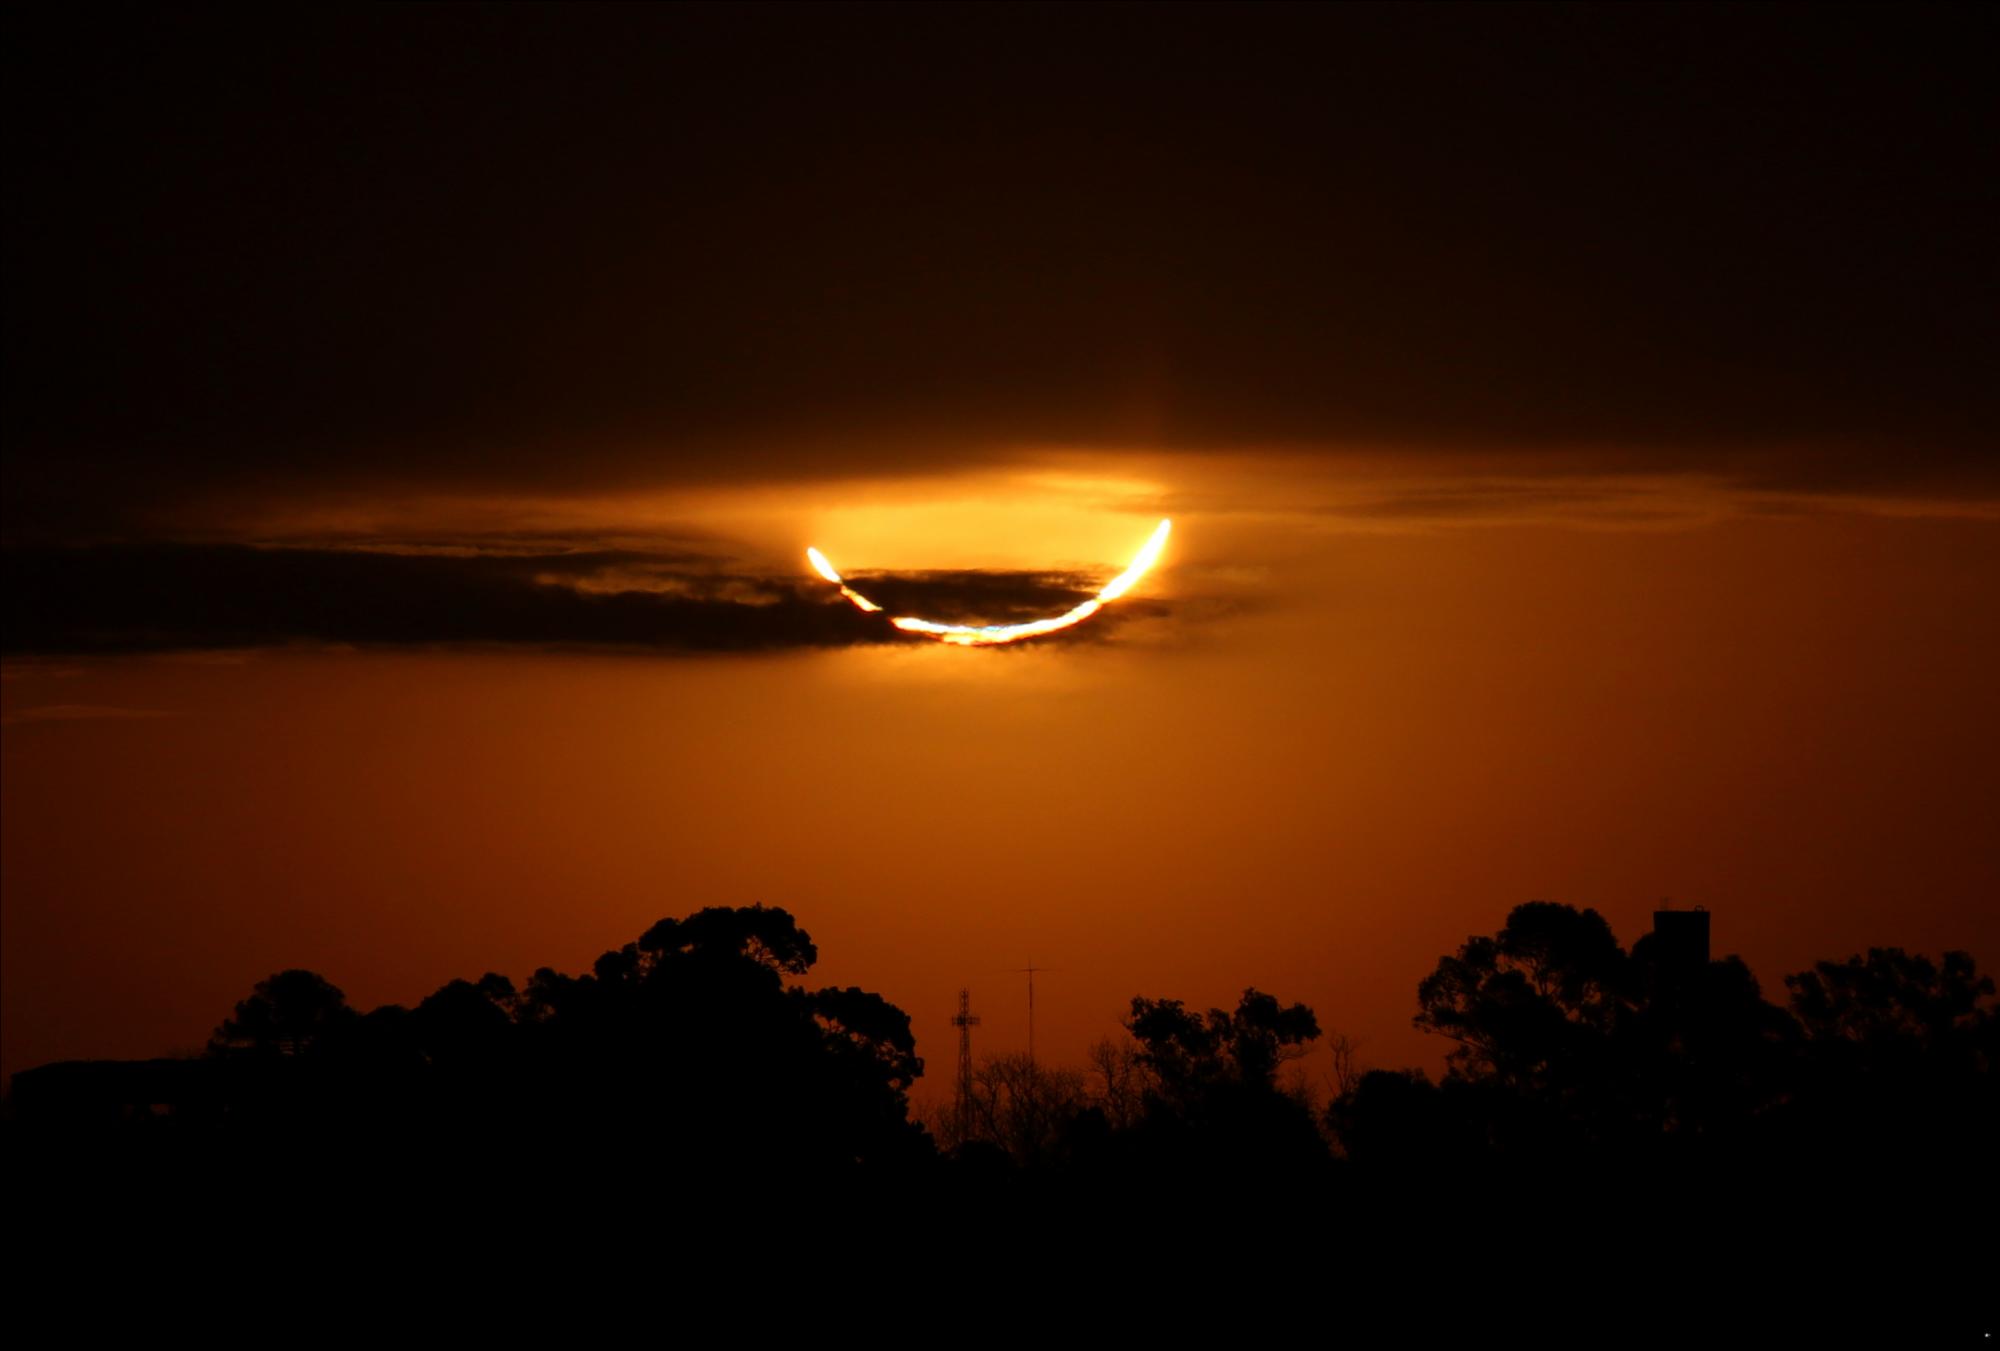 La luna bloquea el sol durante un eclipse solar total, visto desde Buenos Aires, Argentina, el martes 2 de julio de 2019. Se produce un eclipse solar cuando la luna pasa entre la Tierra y el sol y marca un ojo de buey al bloquear completamente la luz del sol.